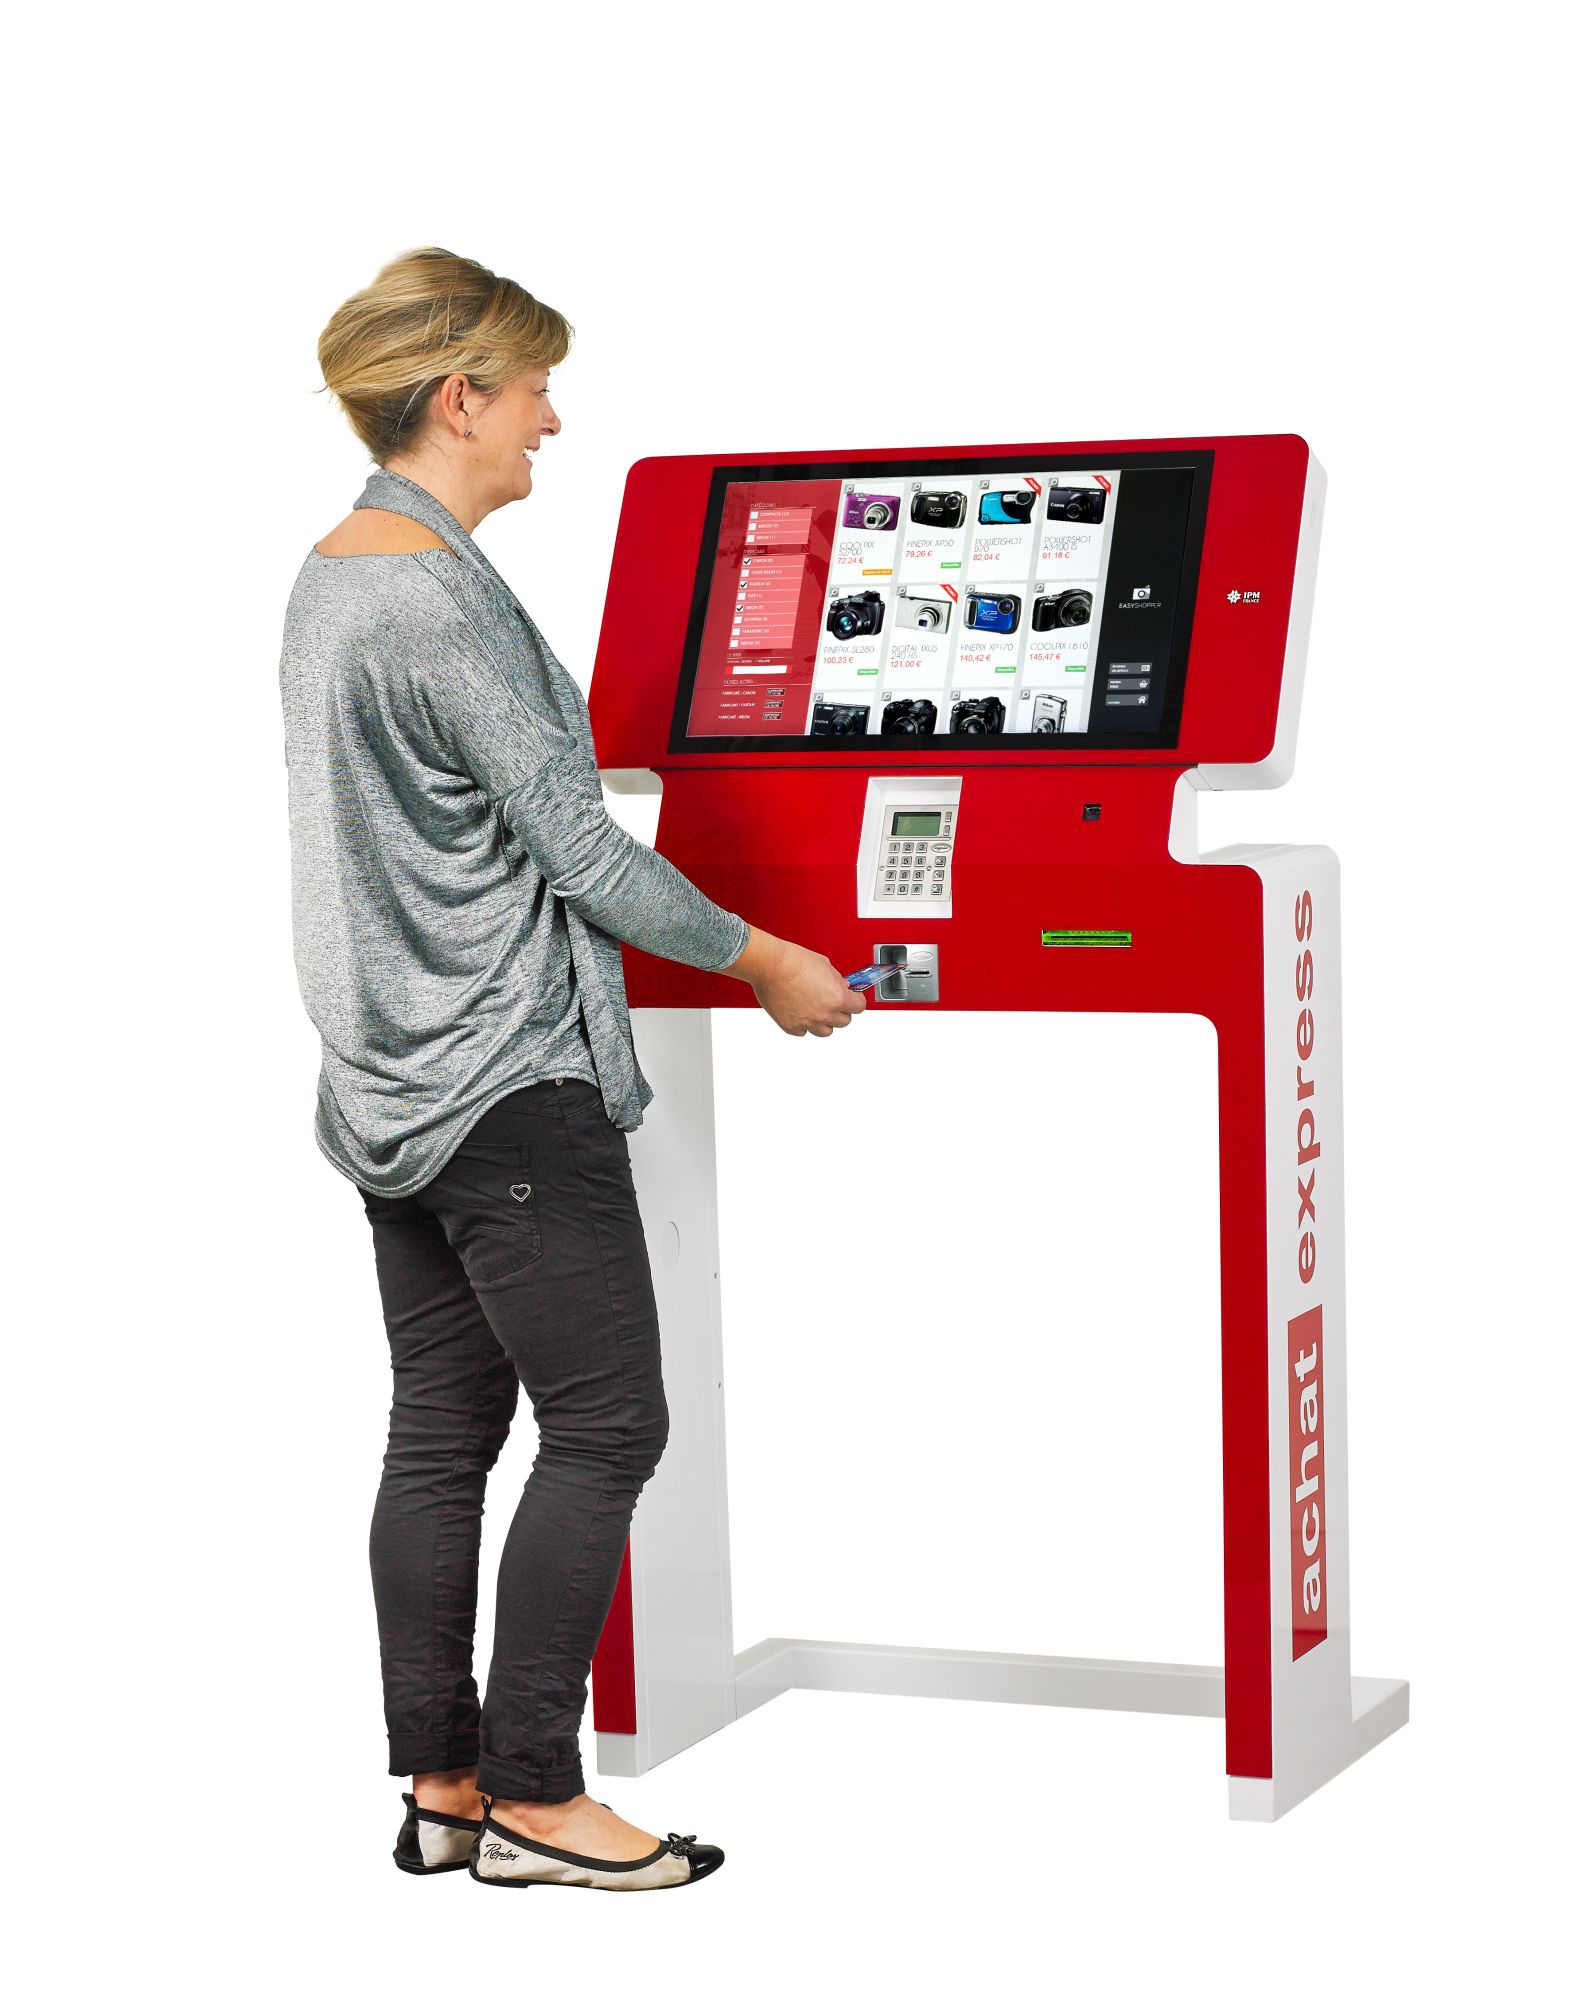 IPM-France_kiosco interactivo pago segura